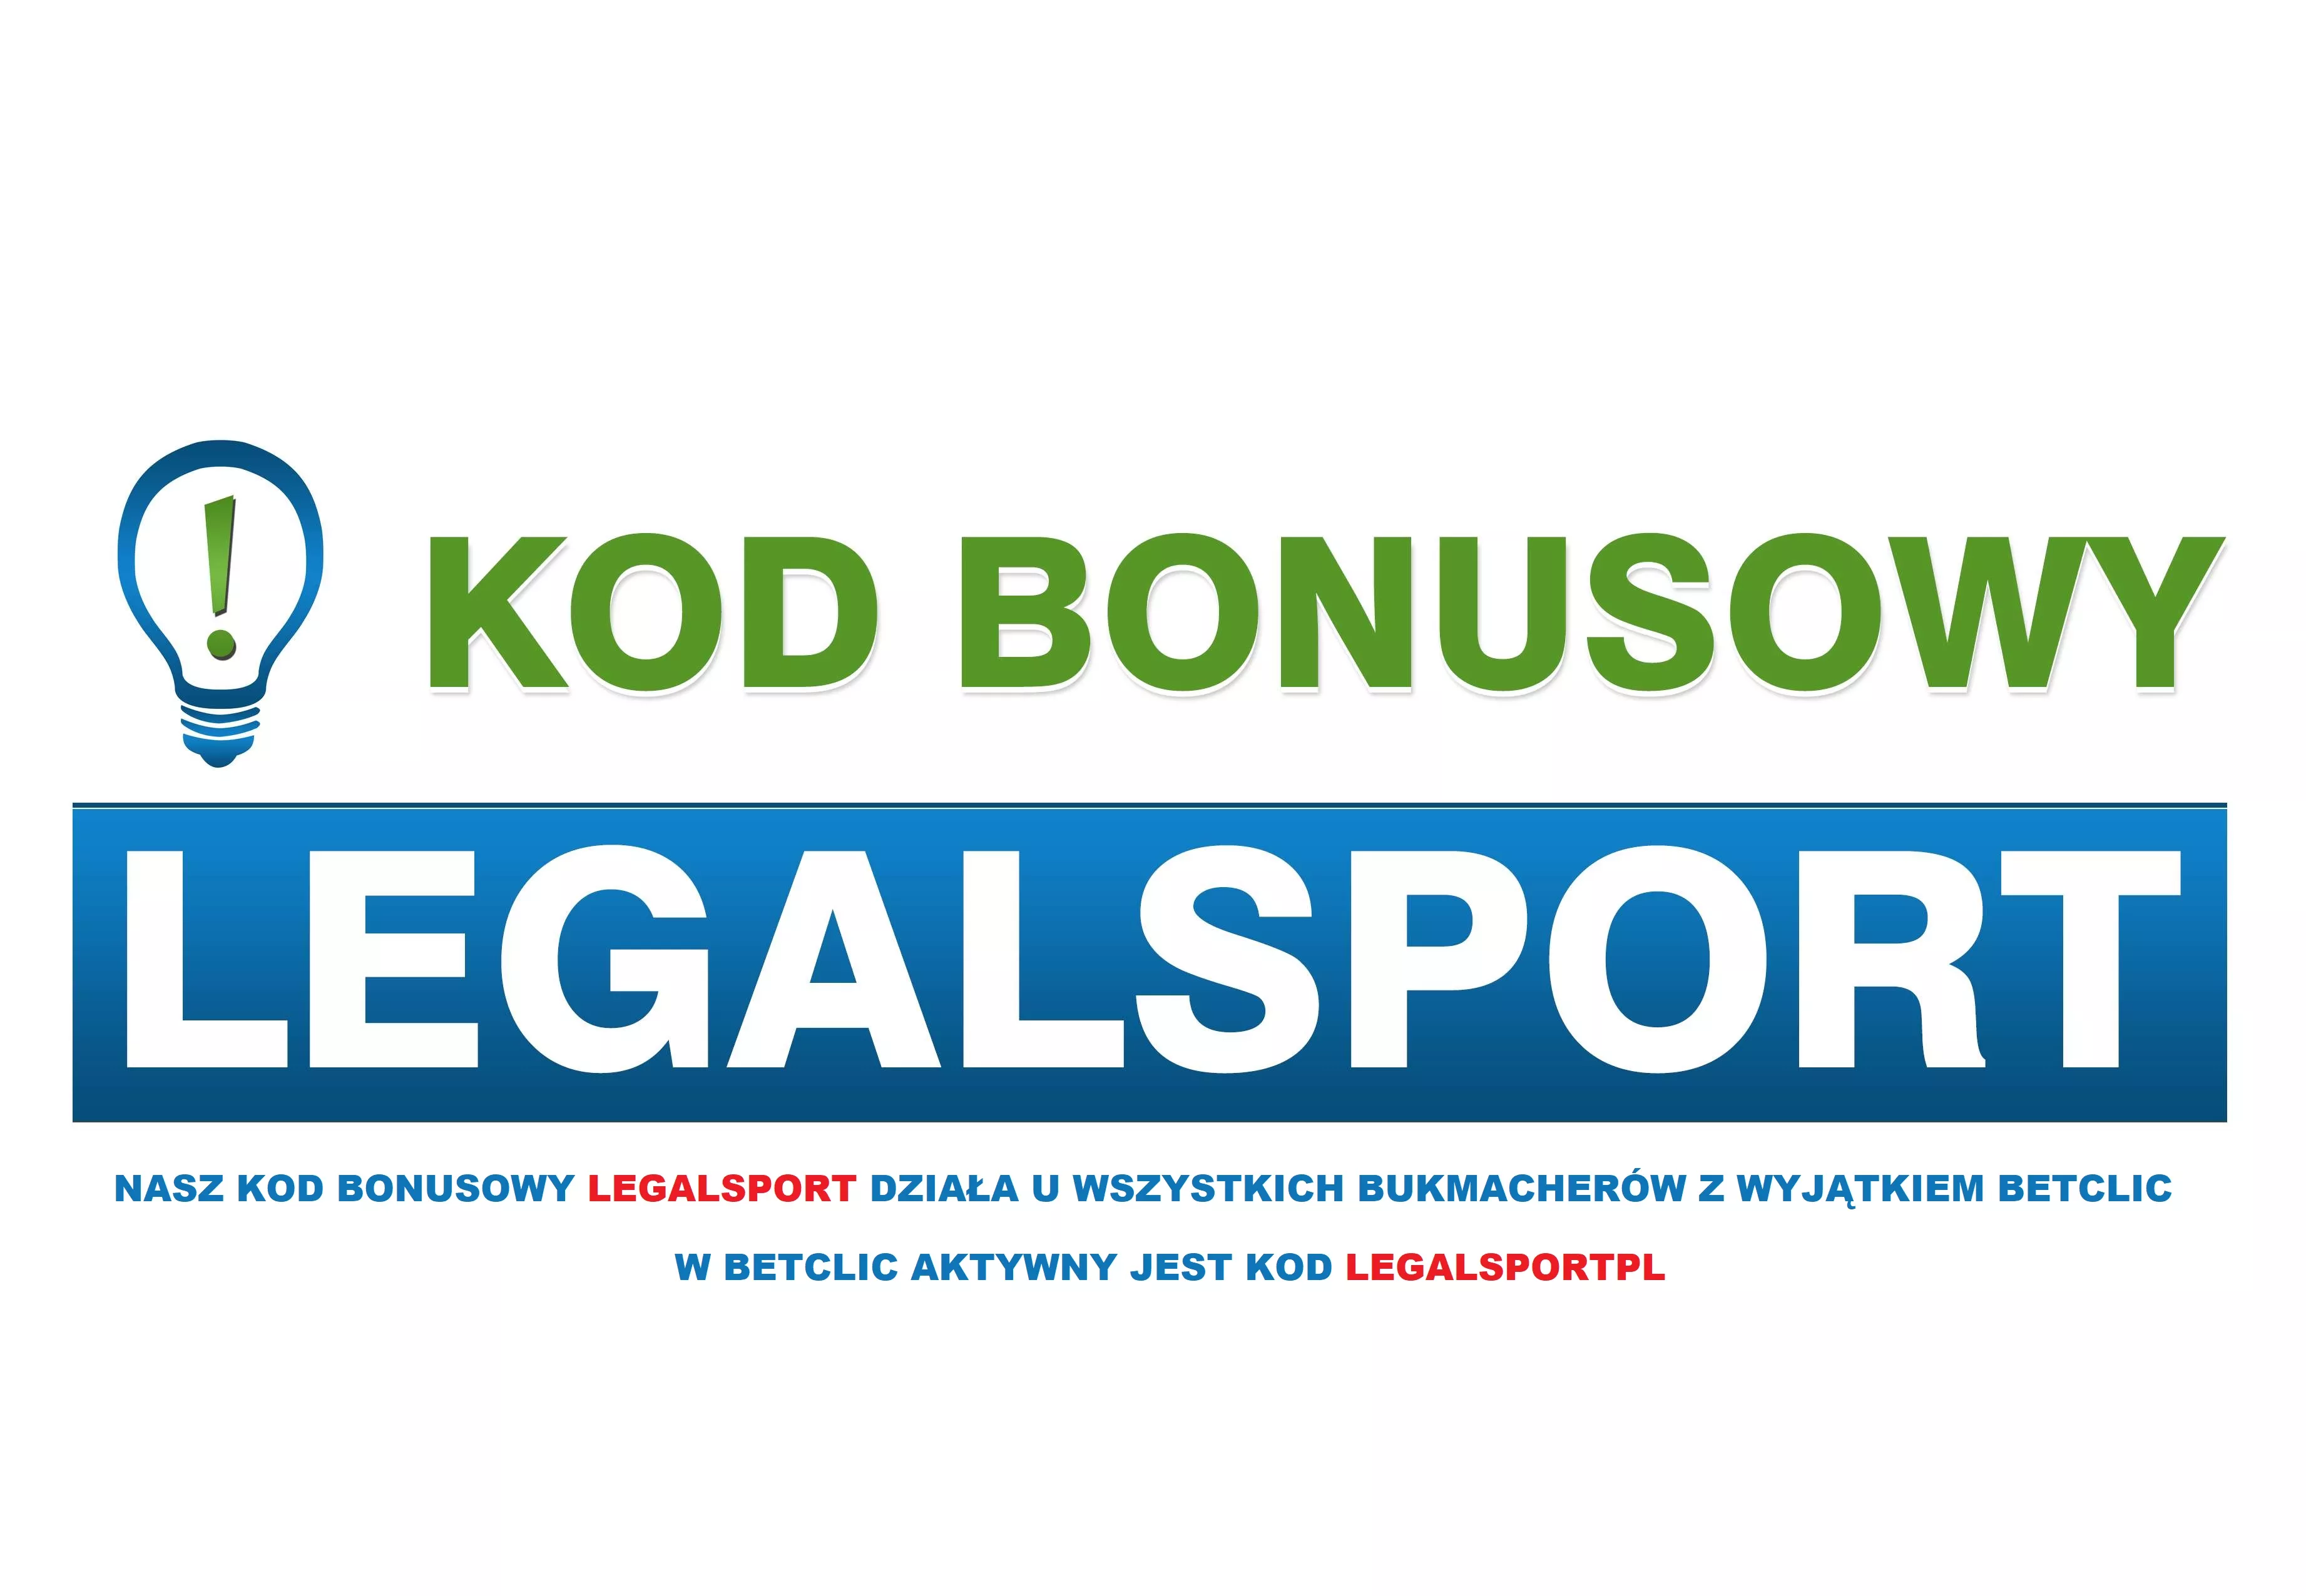 Informacja o najlepszym kodzie promocyjnym na polskim rynku zakładów sportowych online | LEGALSPORT 